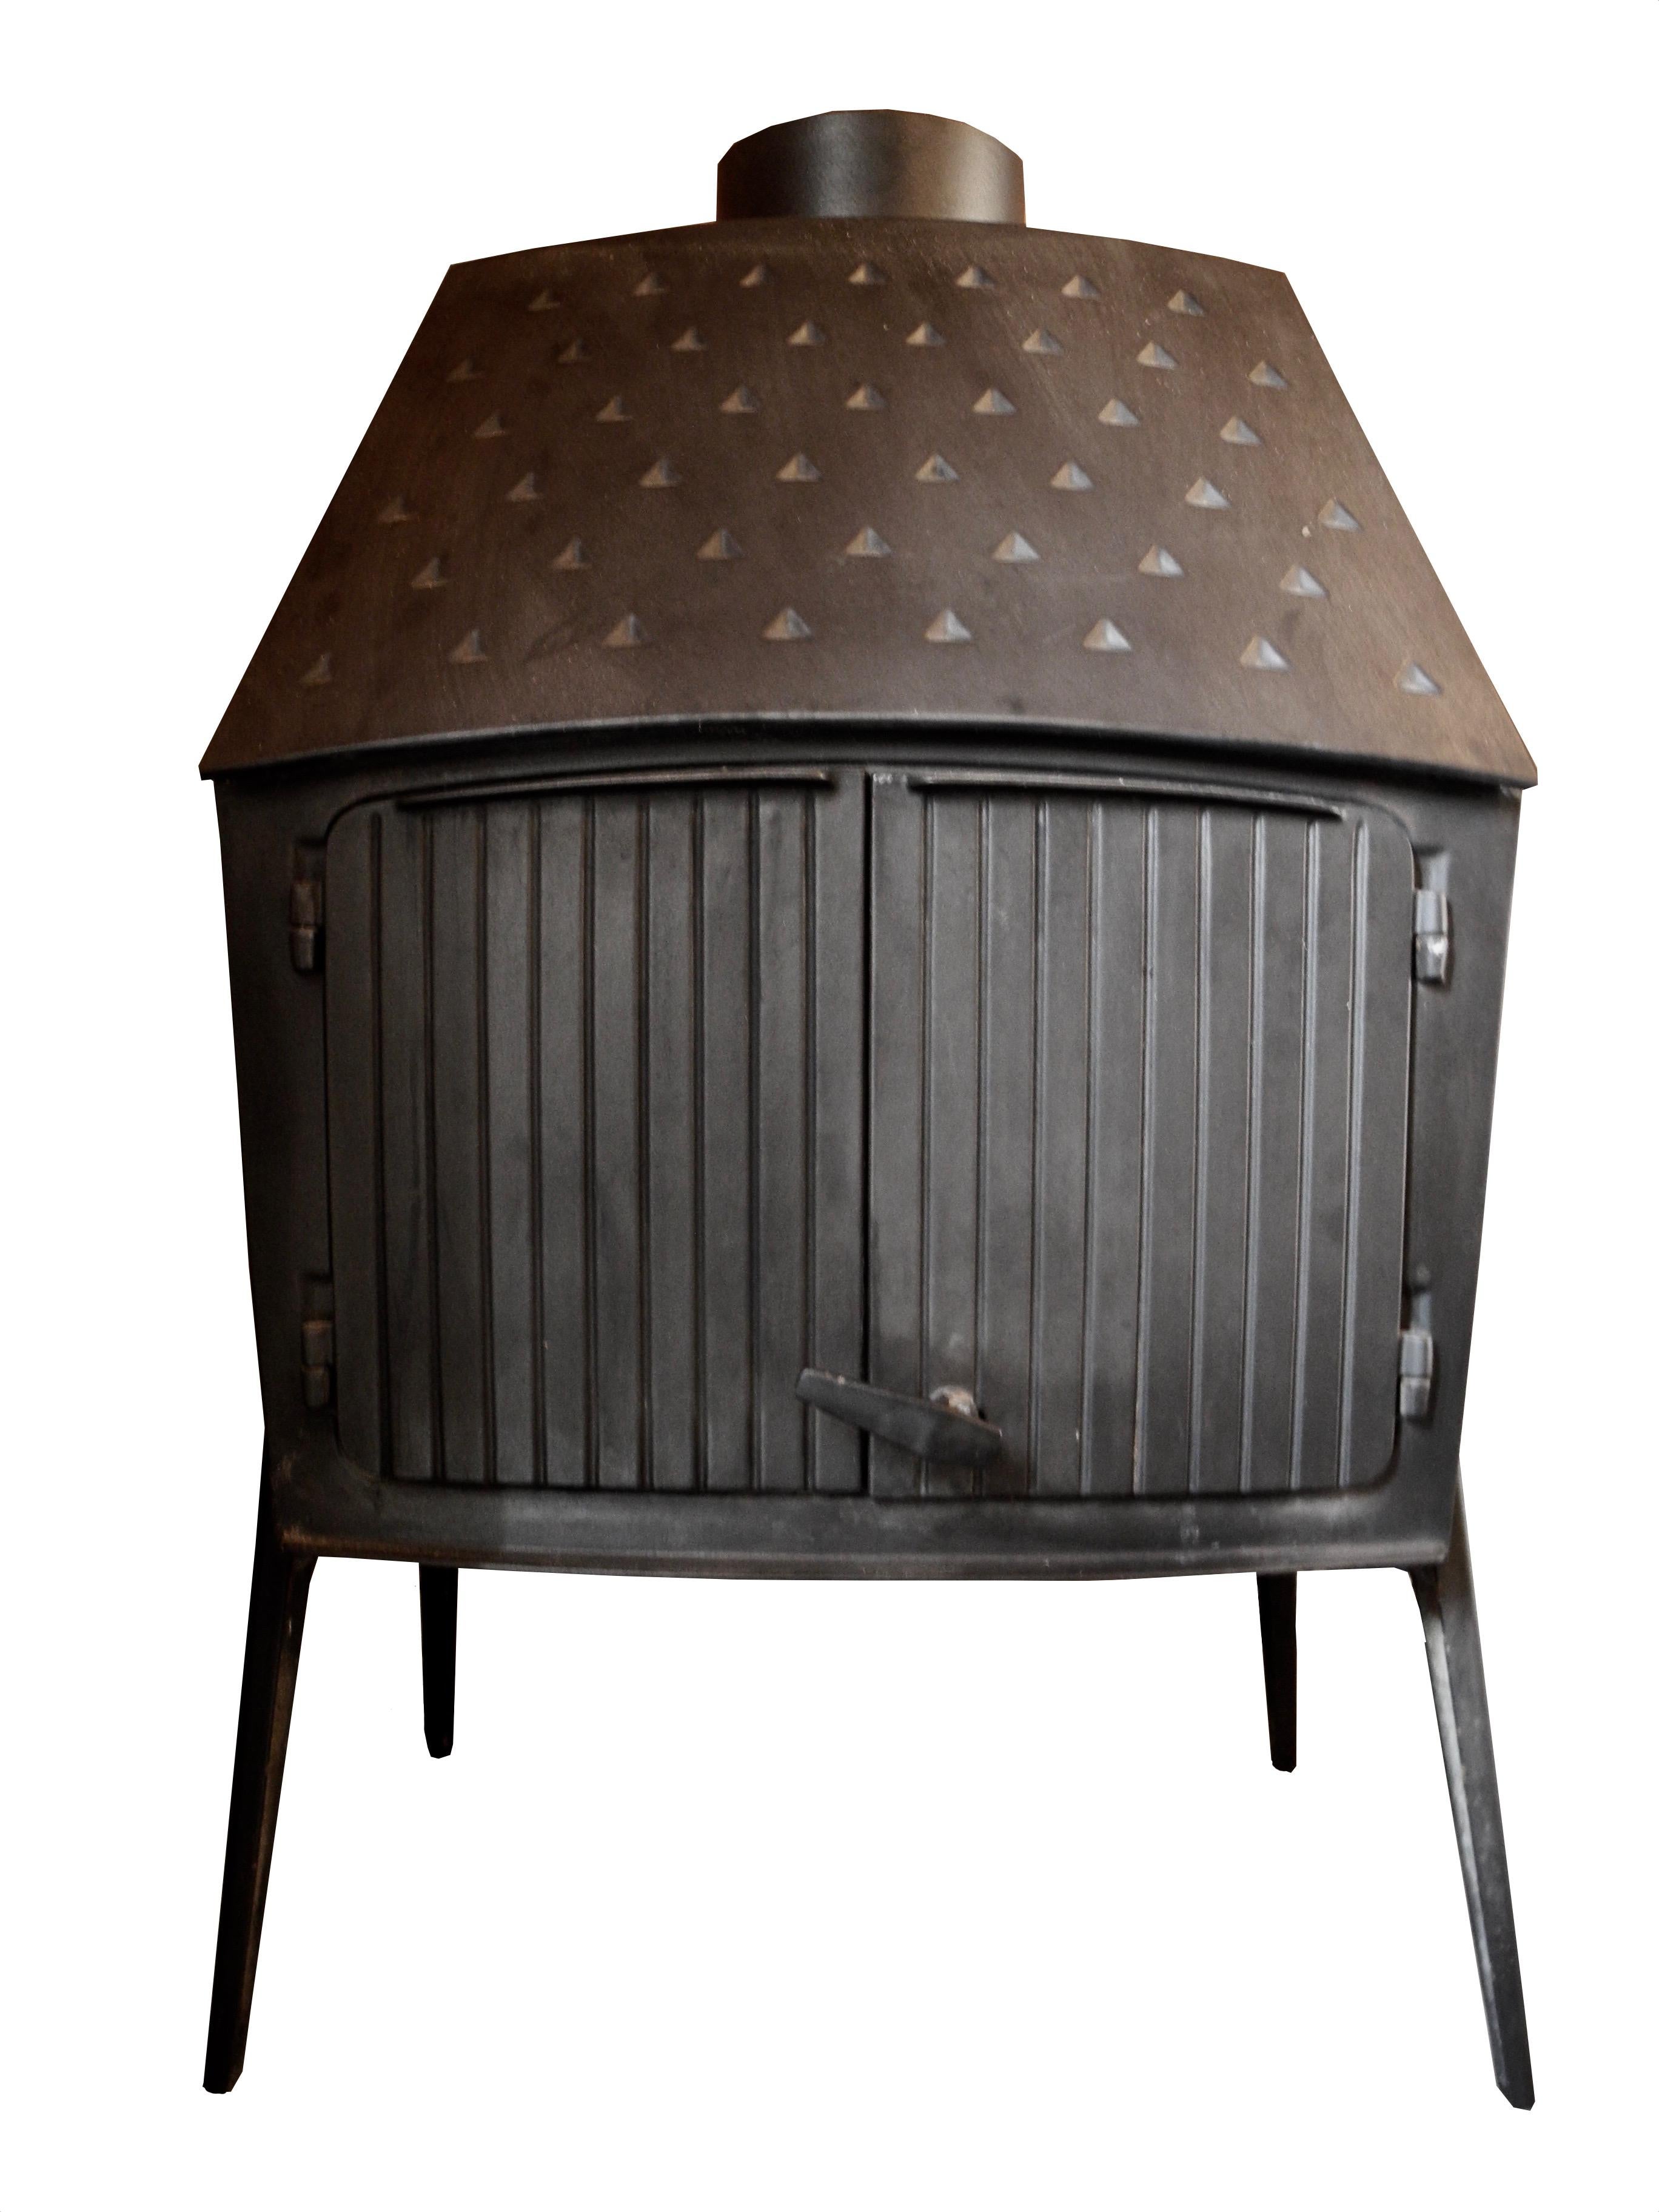 morso 1125 wood stove for sale